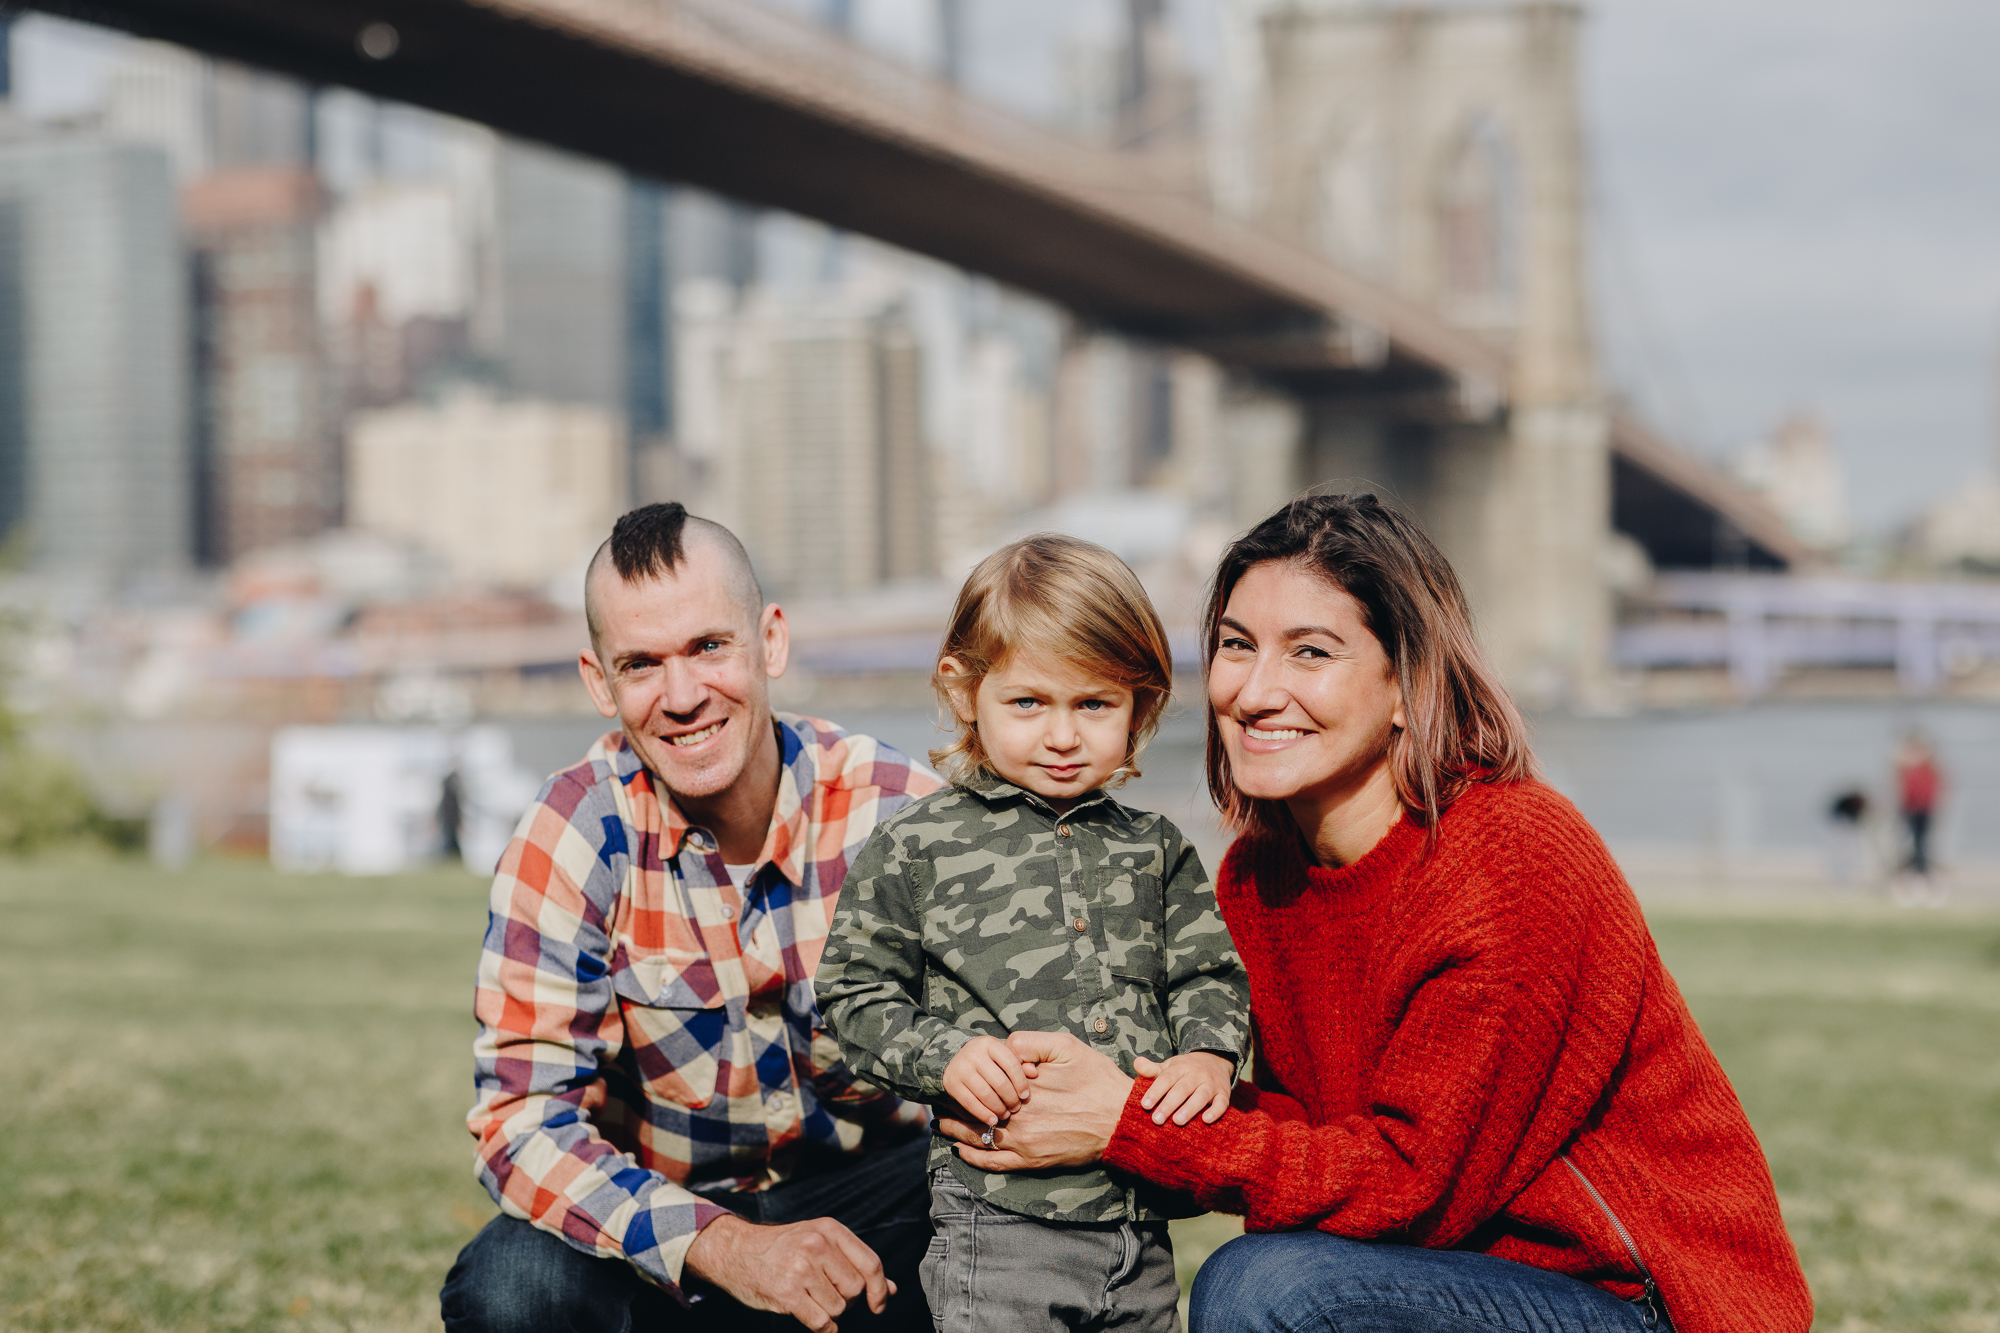 Joyful DUMBO Family Photos in New York